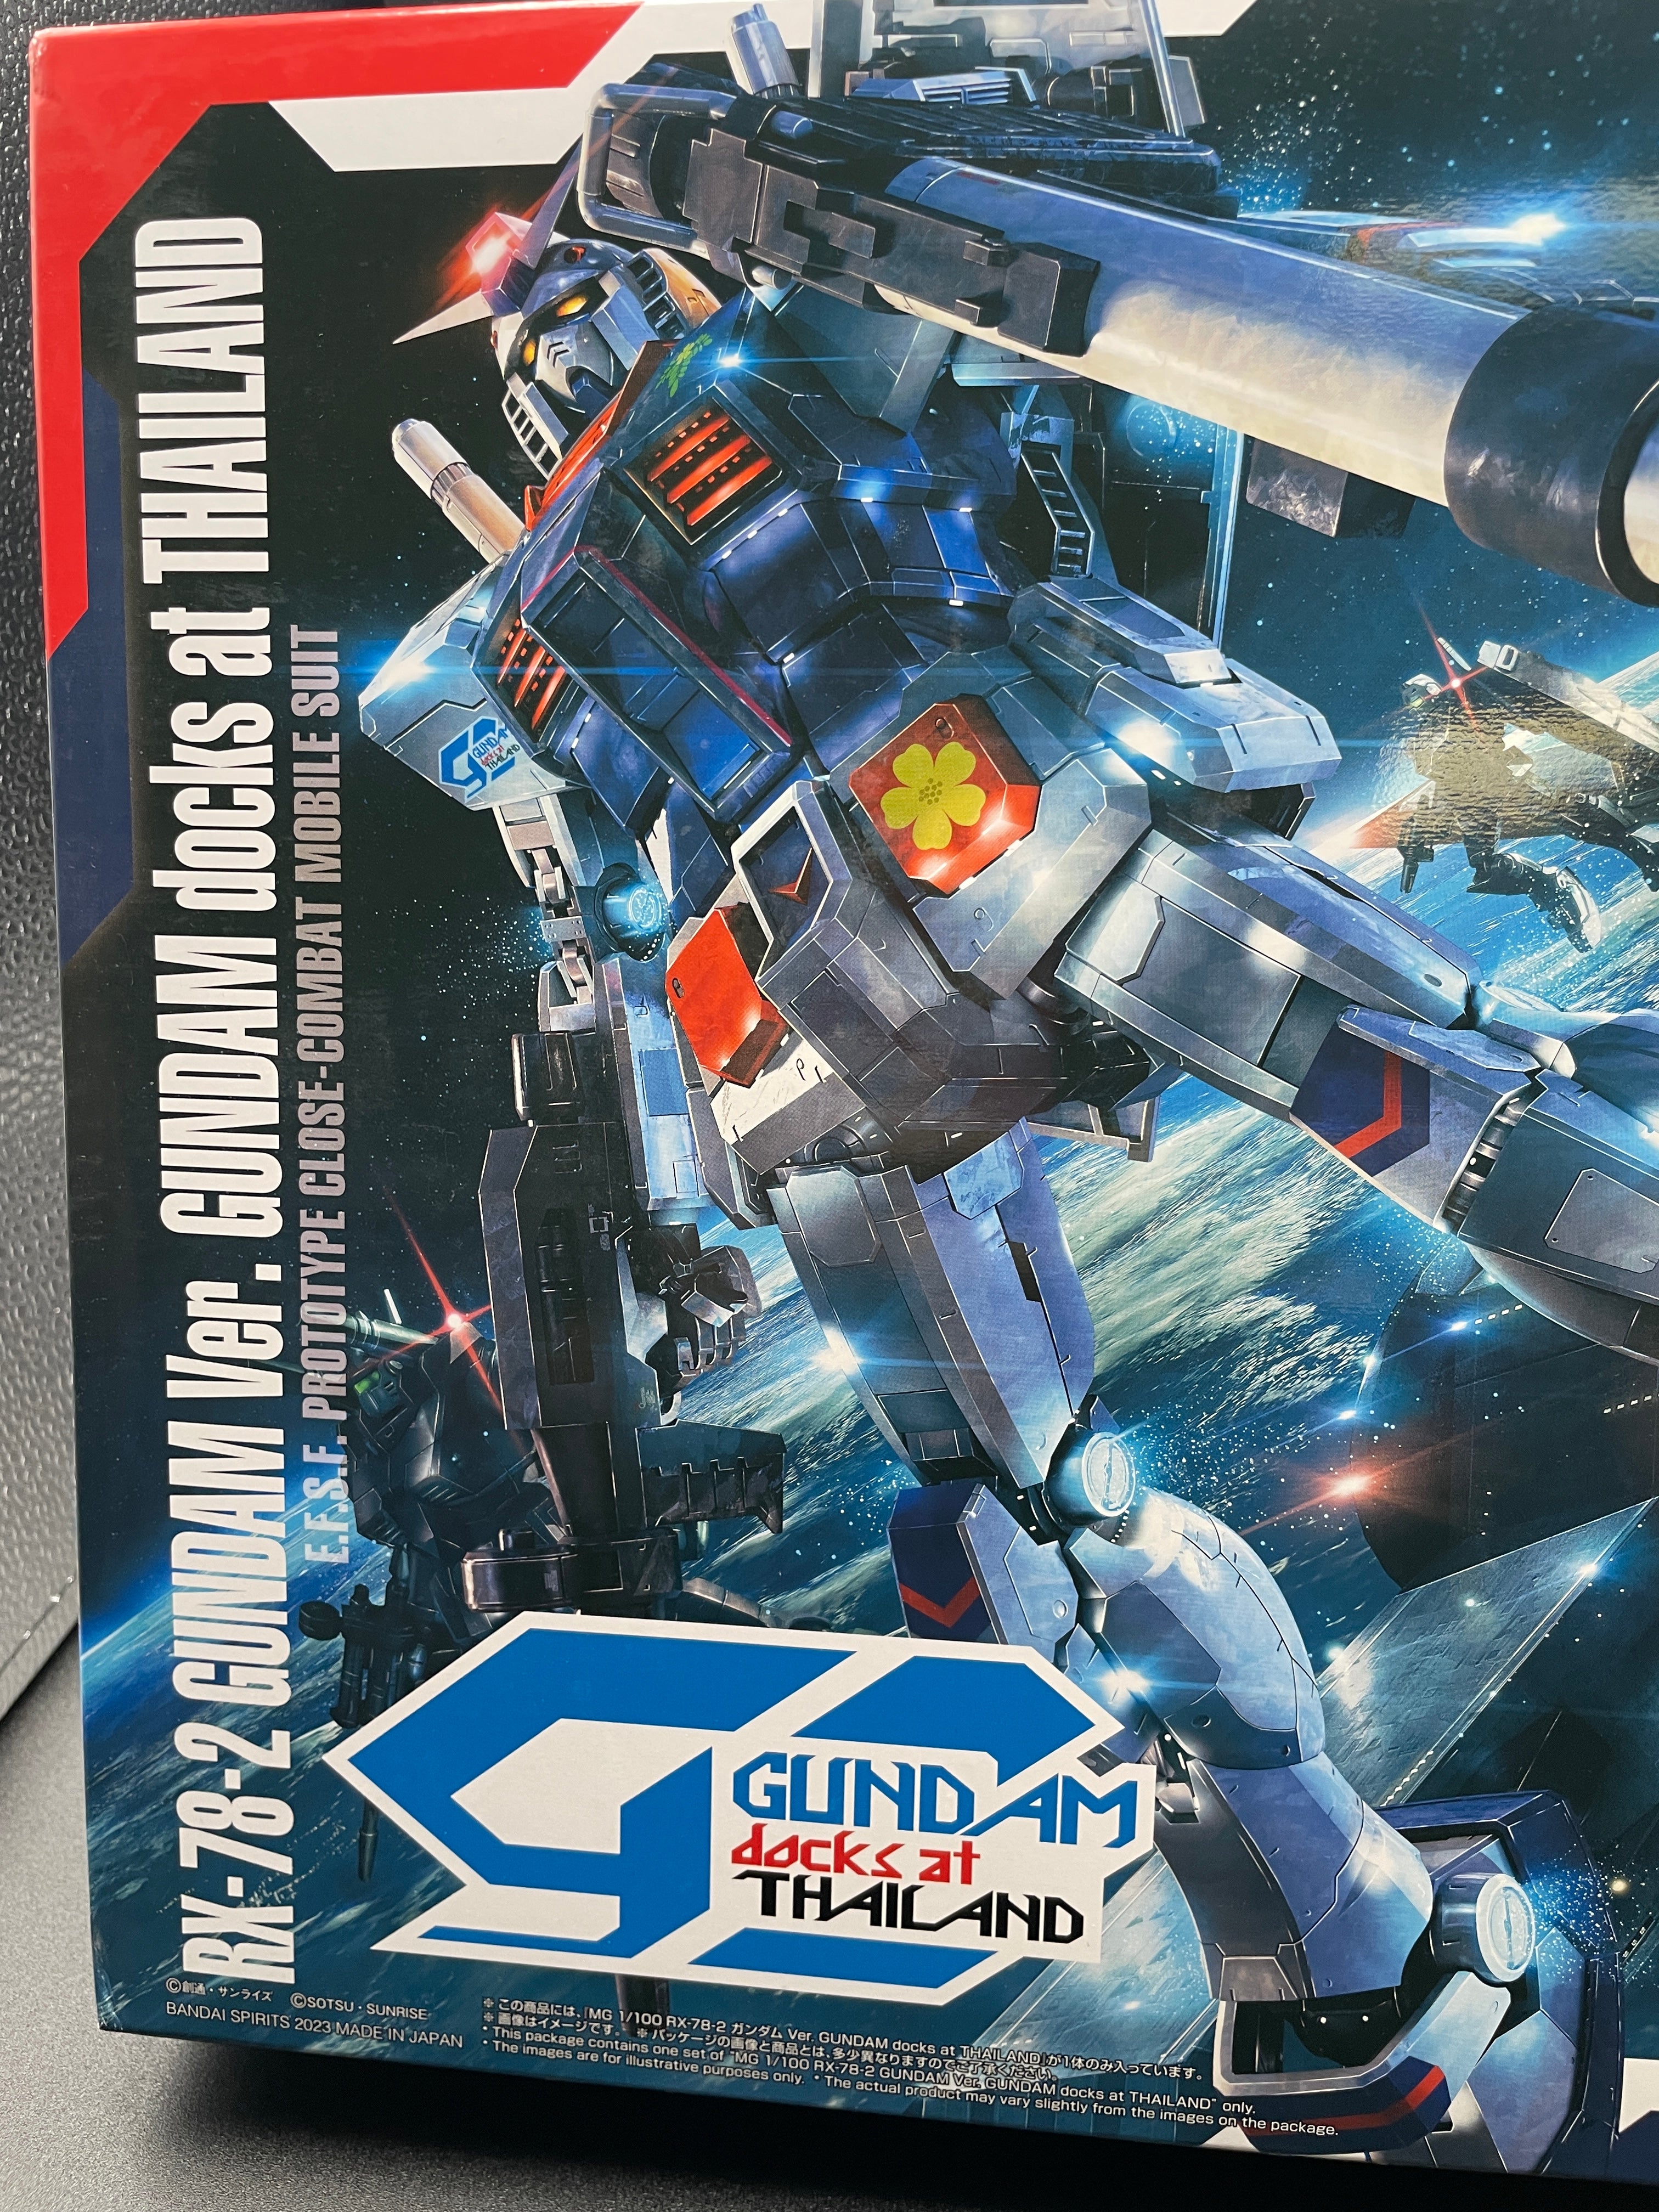 Bandai MG 1/100 Rx-78-2 Gundam Ver 3.0 Docks At Thailand Imported